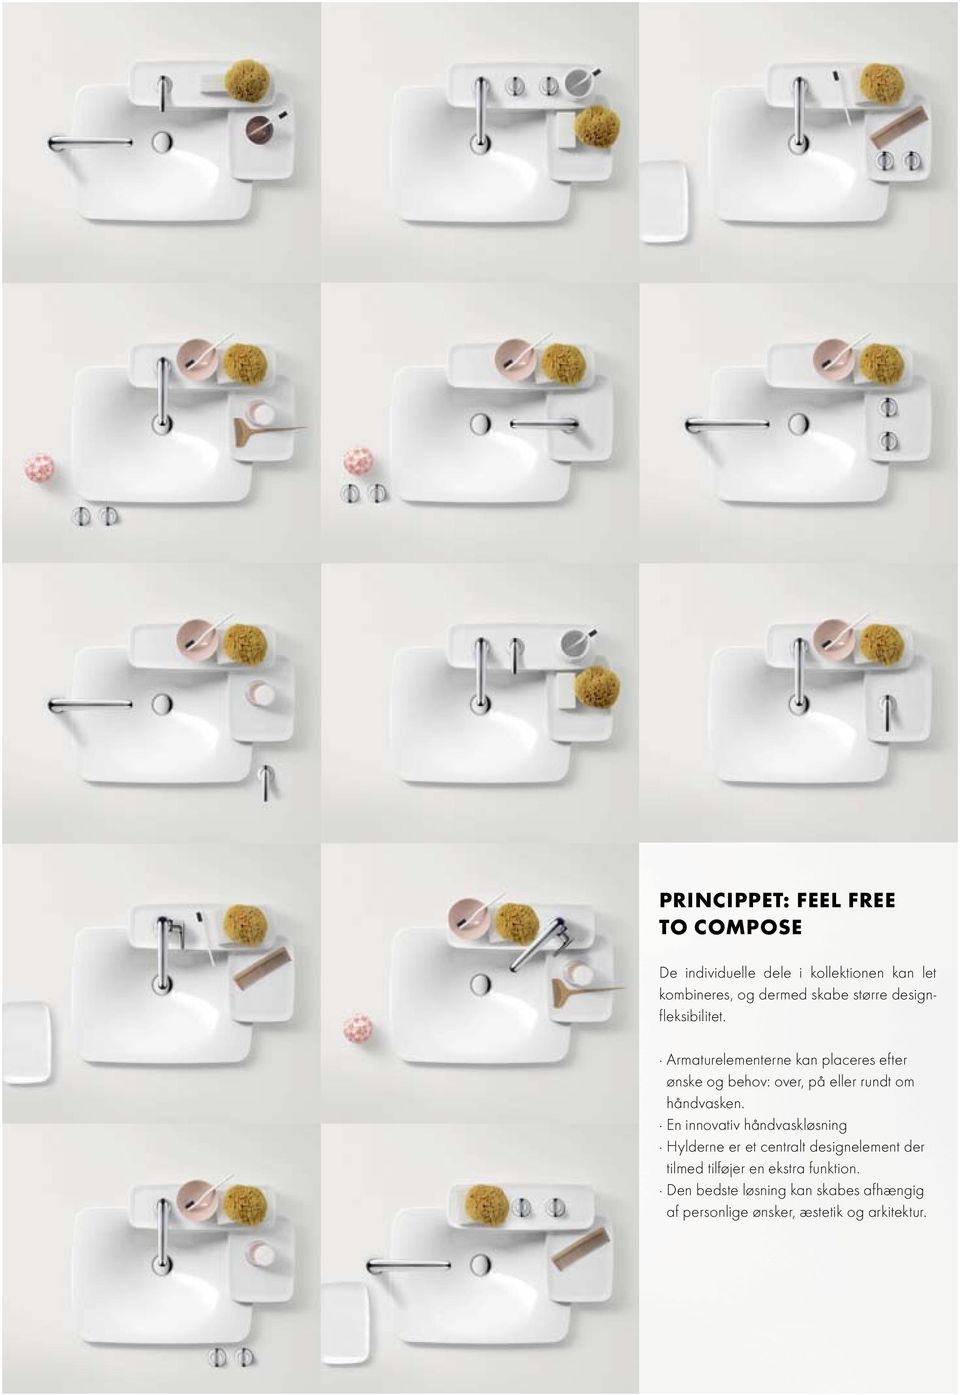 Armaturelementerne kan placeres efter ønske og behov: over, på eller rundt om håndvasken.